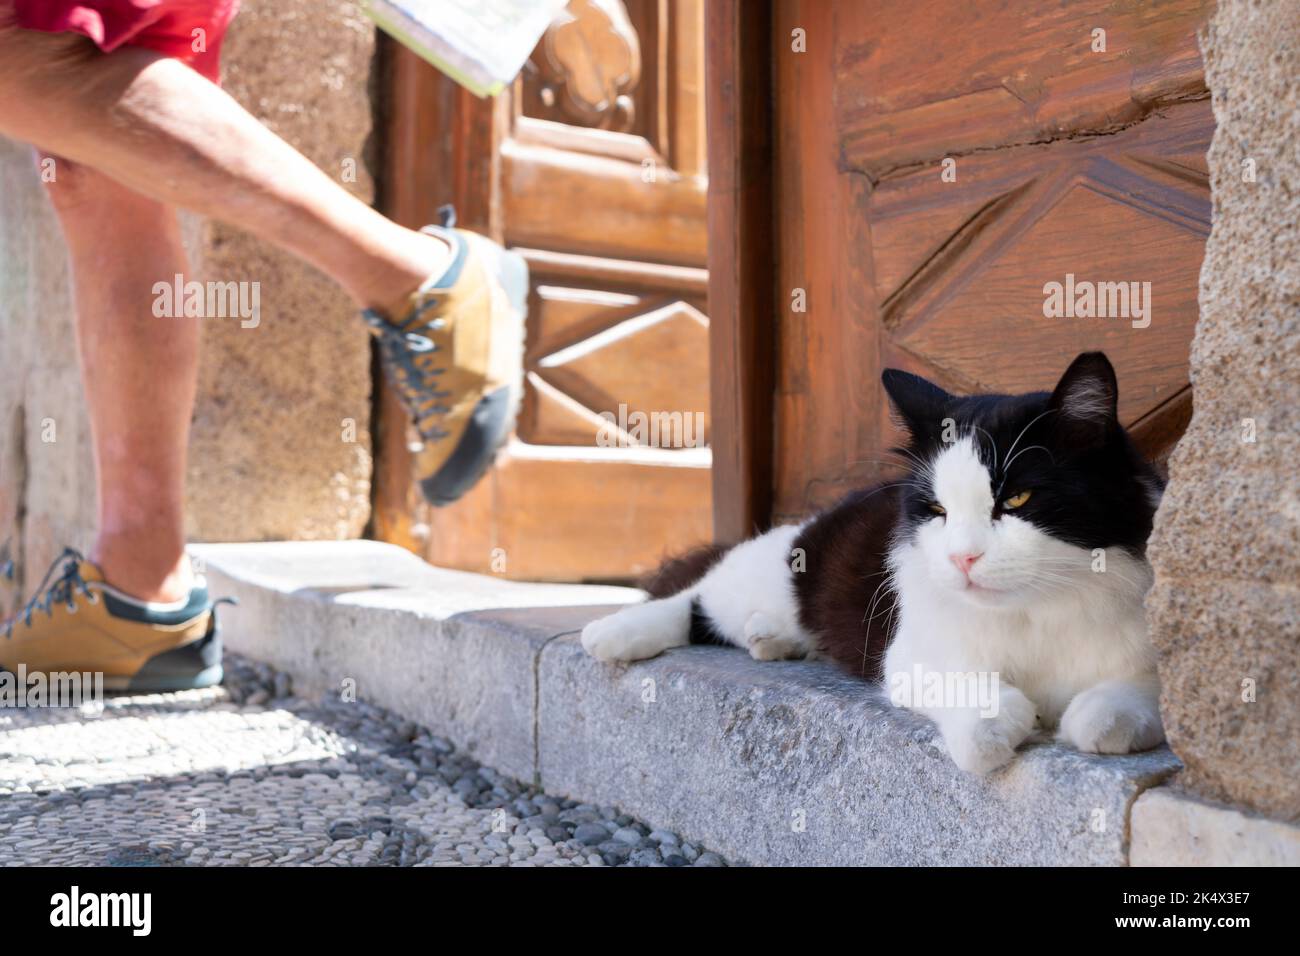 Un gato blanco y negro acostado en una puerta fuera de una casa. El gato no se mueve o se agita mientras alguien pasa por él cuando sale de la casa Foto de stock